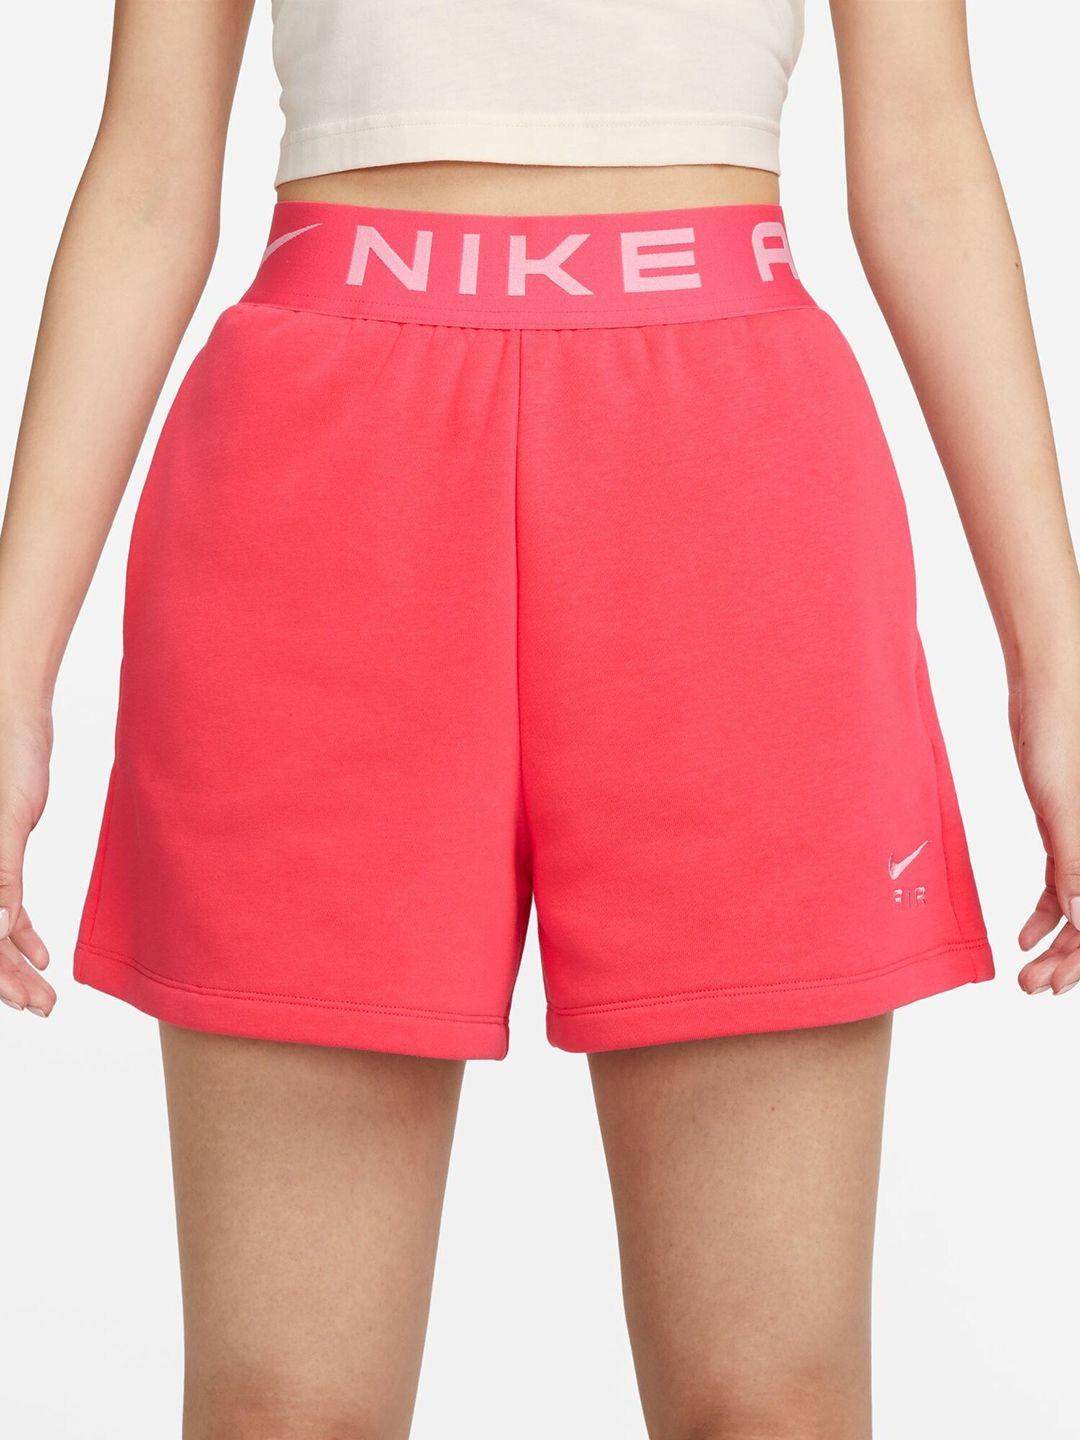 nike women high-rise shorts